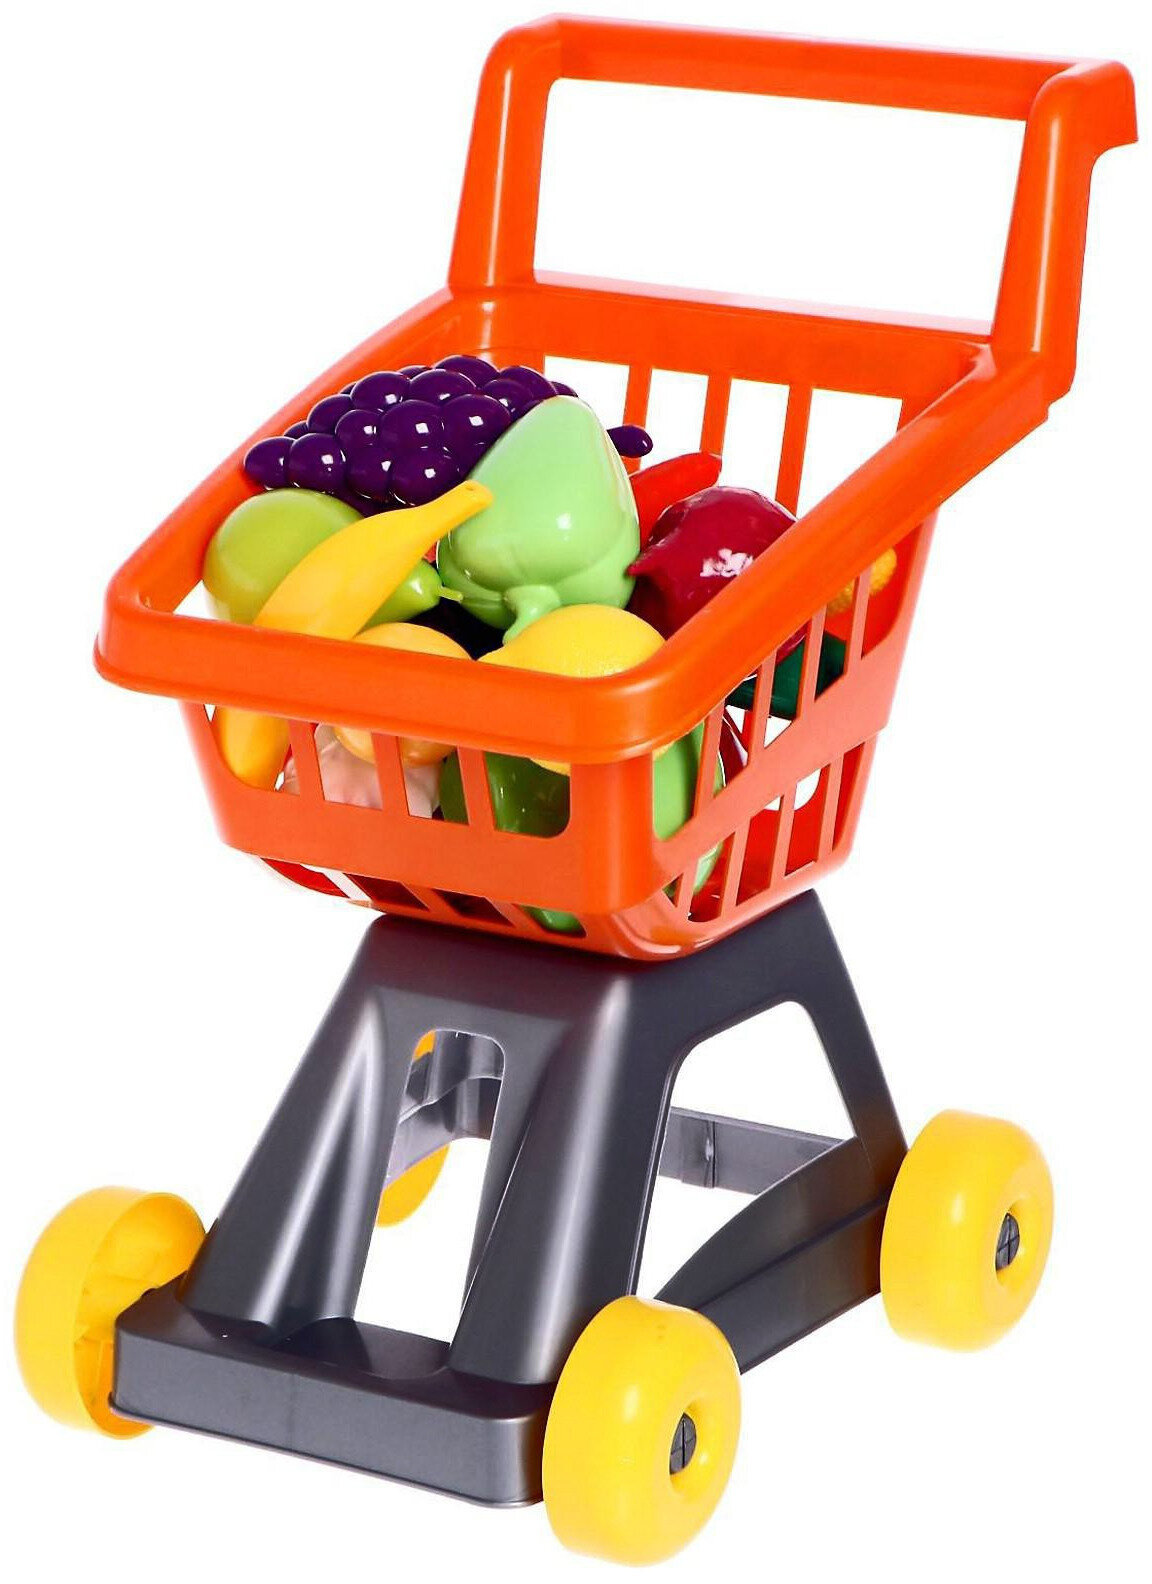 Сюжетно-ролевая игрушка "Тележка для супермаркета с фруктами и овощами", играем в магазин